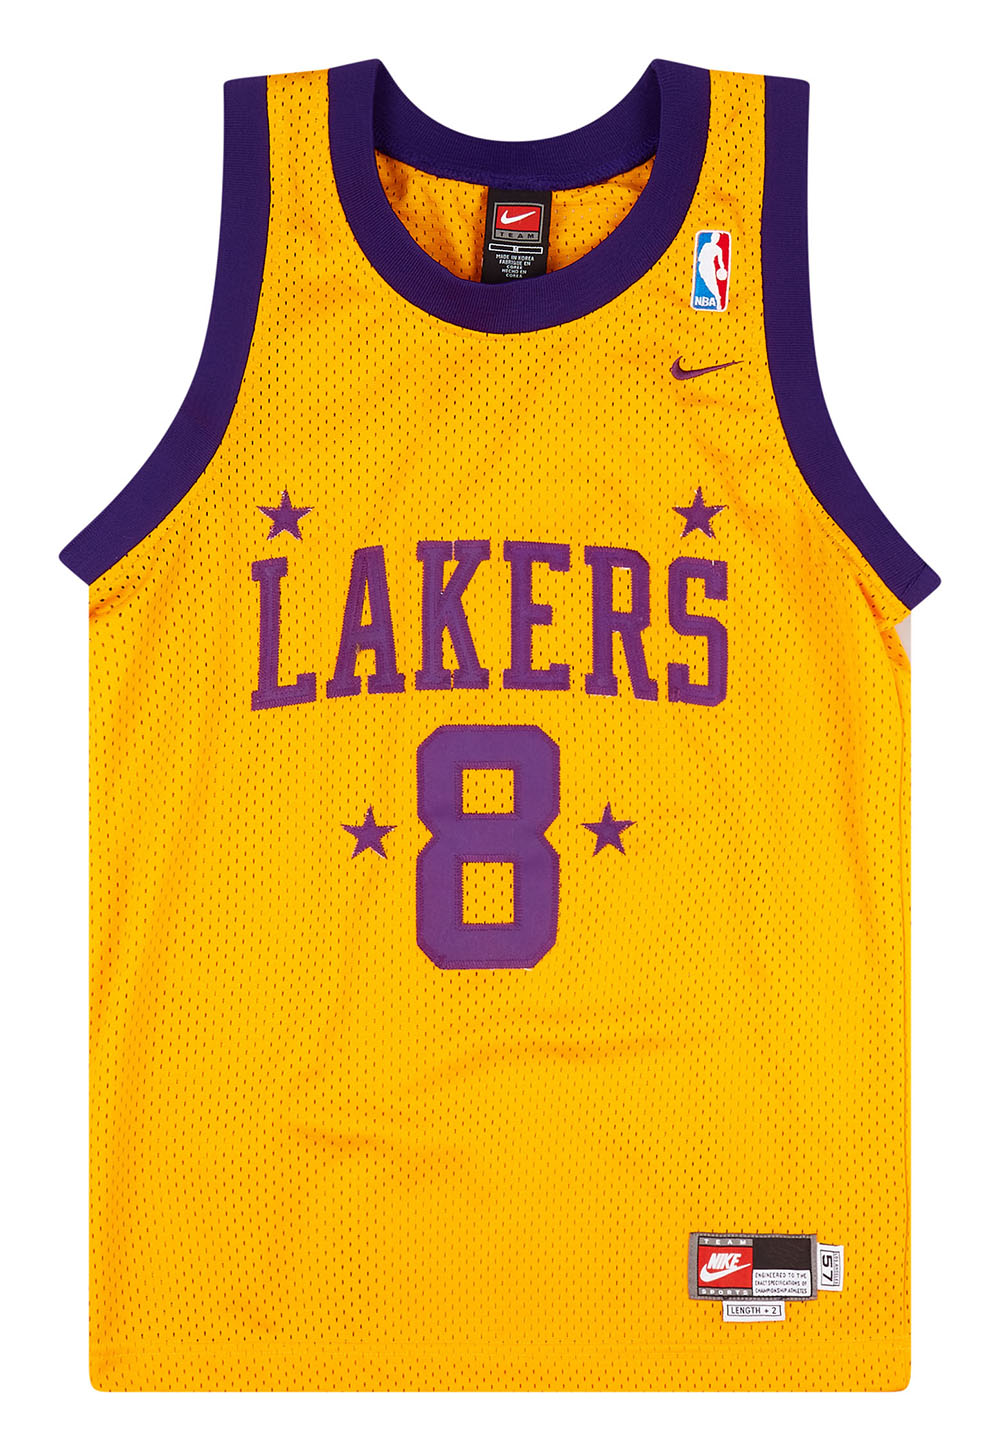 Nike Kobe Bryant LA Lakers Blue NBA Jersey - 5 Star Vintage